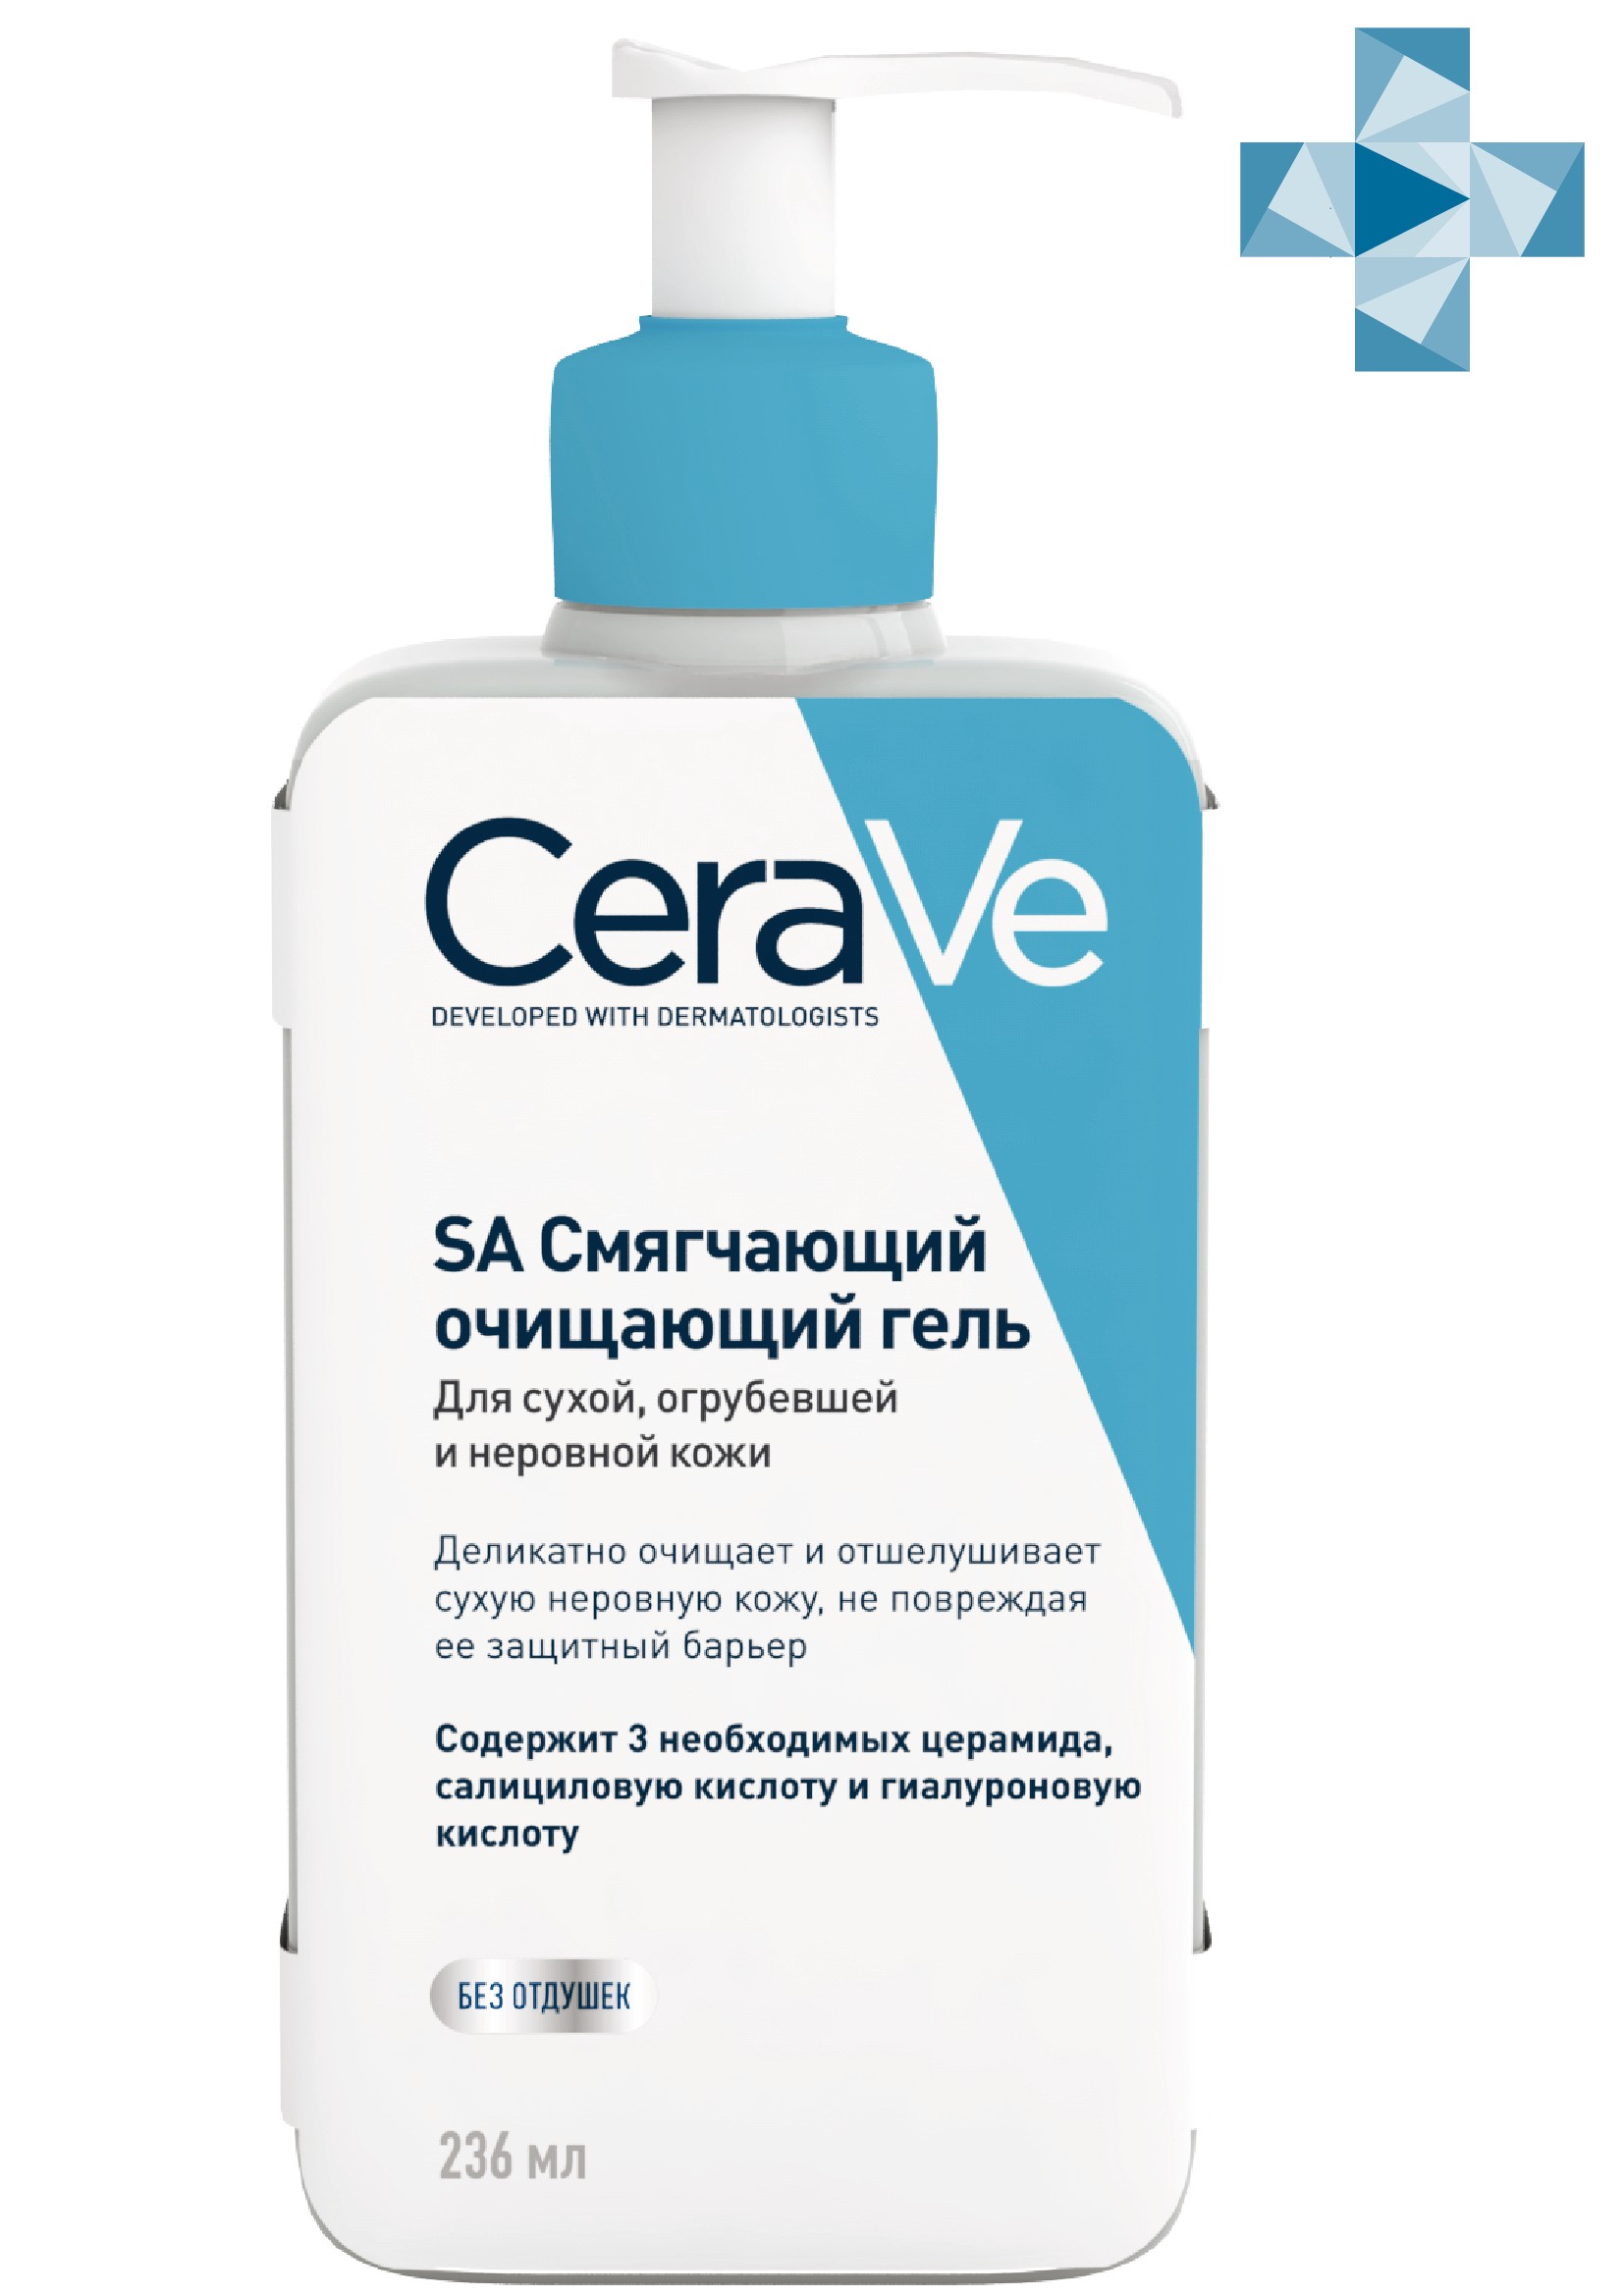 ЦераВе гель смягчающий очищающий для сухой огрубевшей и неровной кожи 236мл, CeraVe  - купить